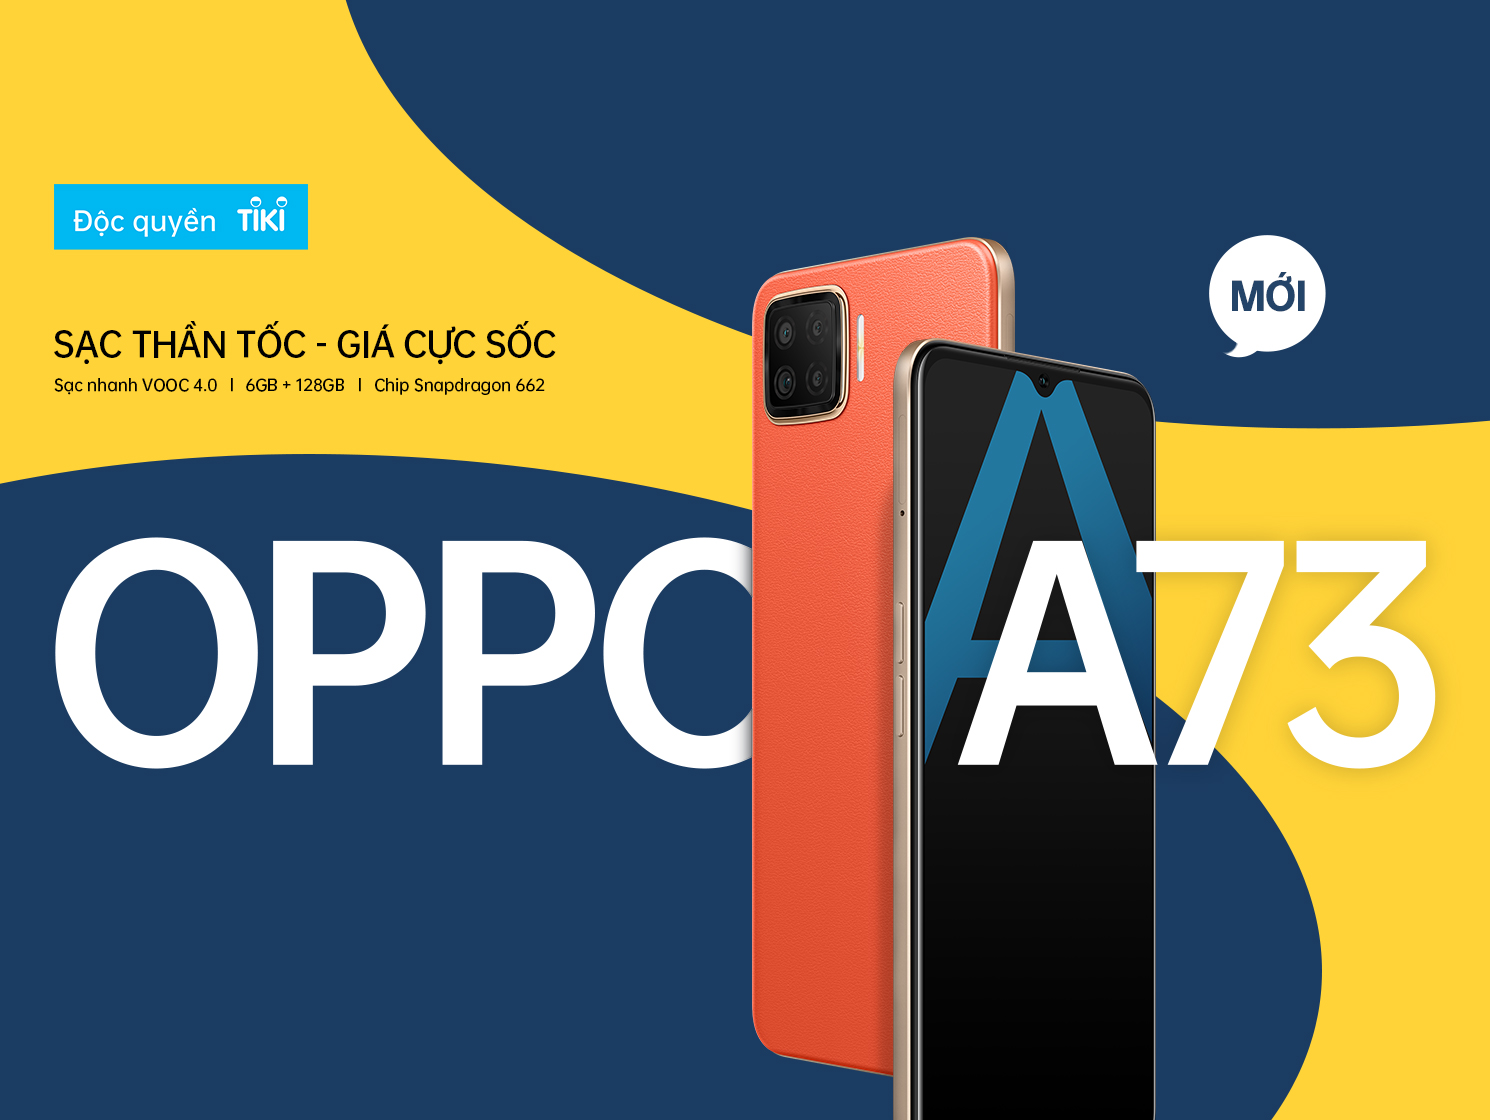 Bạn đang tìm kiếm một chiếc điện thoại với thiết kế đẹp mắt, màn hình rộng và chất lượng chụp ảnh tuyệt vời? Hãy đến và khám phá với OPPO A73! Với nhiều tính năng tiên tiến, chiếc điện thoại này sẽ đem đến cho bạn nhiều trải nghiệm thú vị.